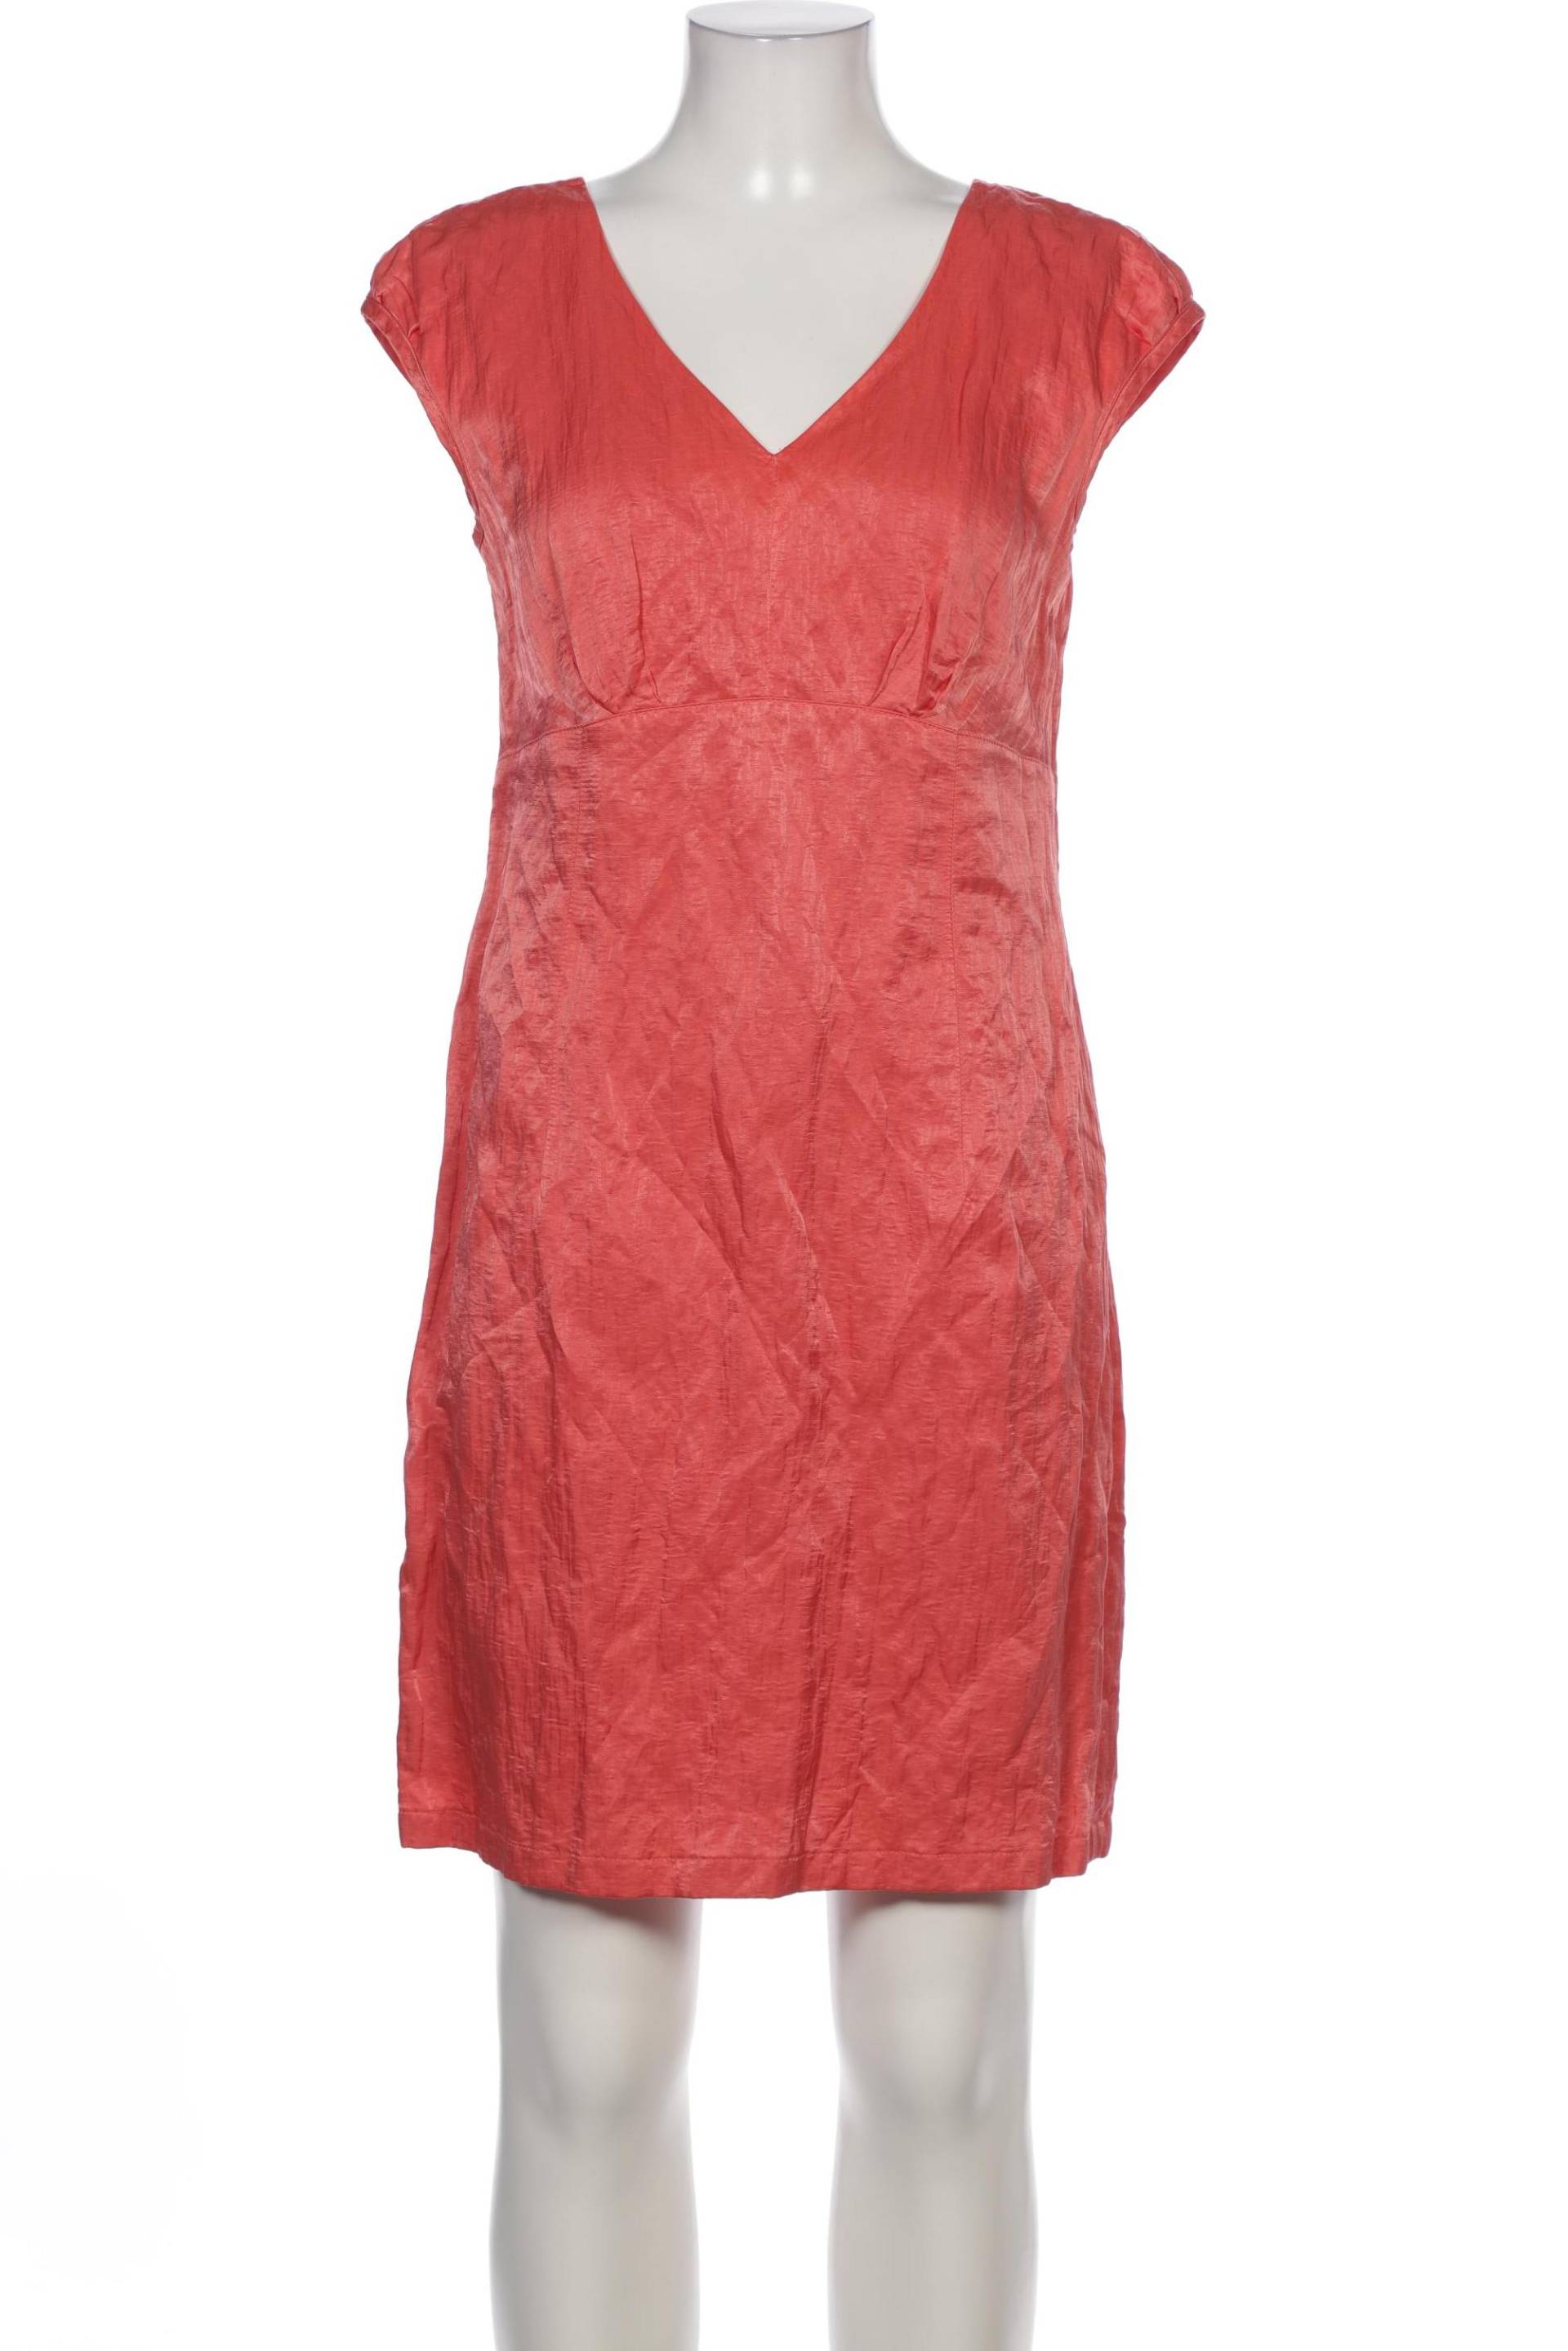 Madeleine Damen Kleid, rot von Madeleine